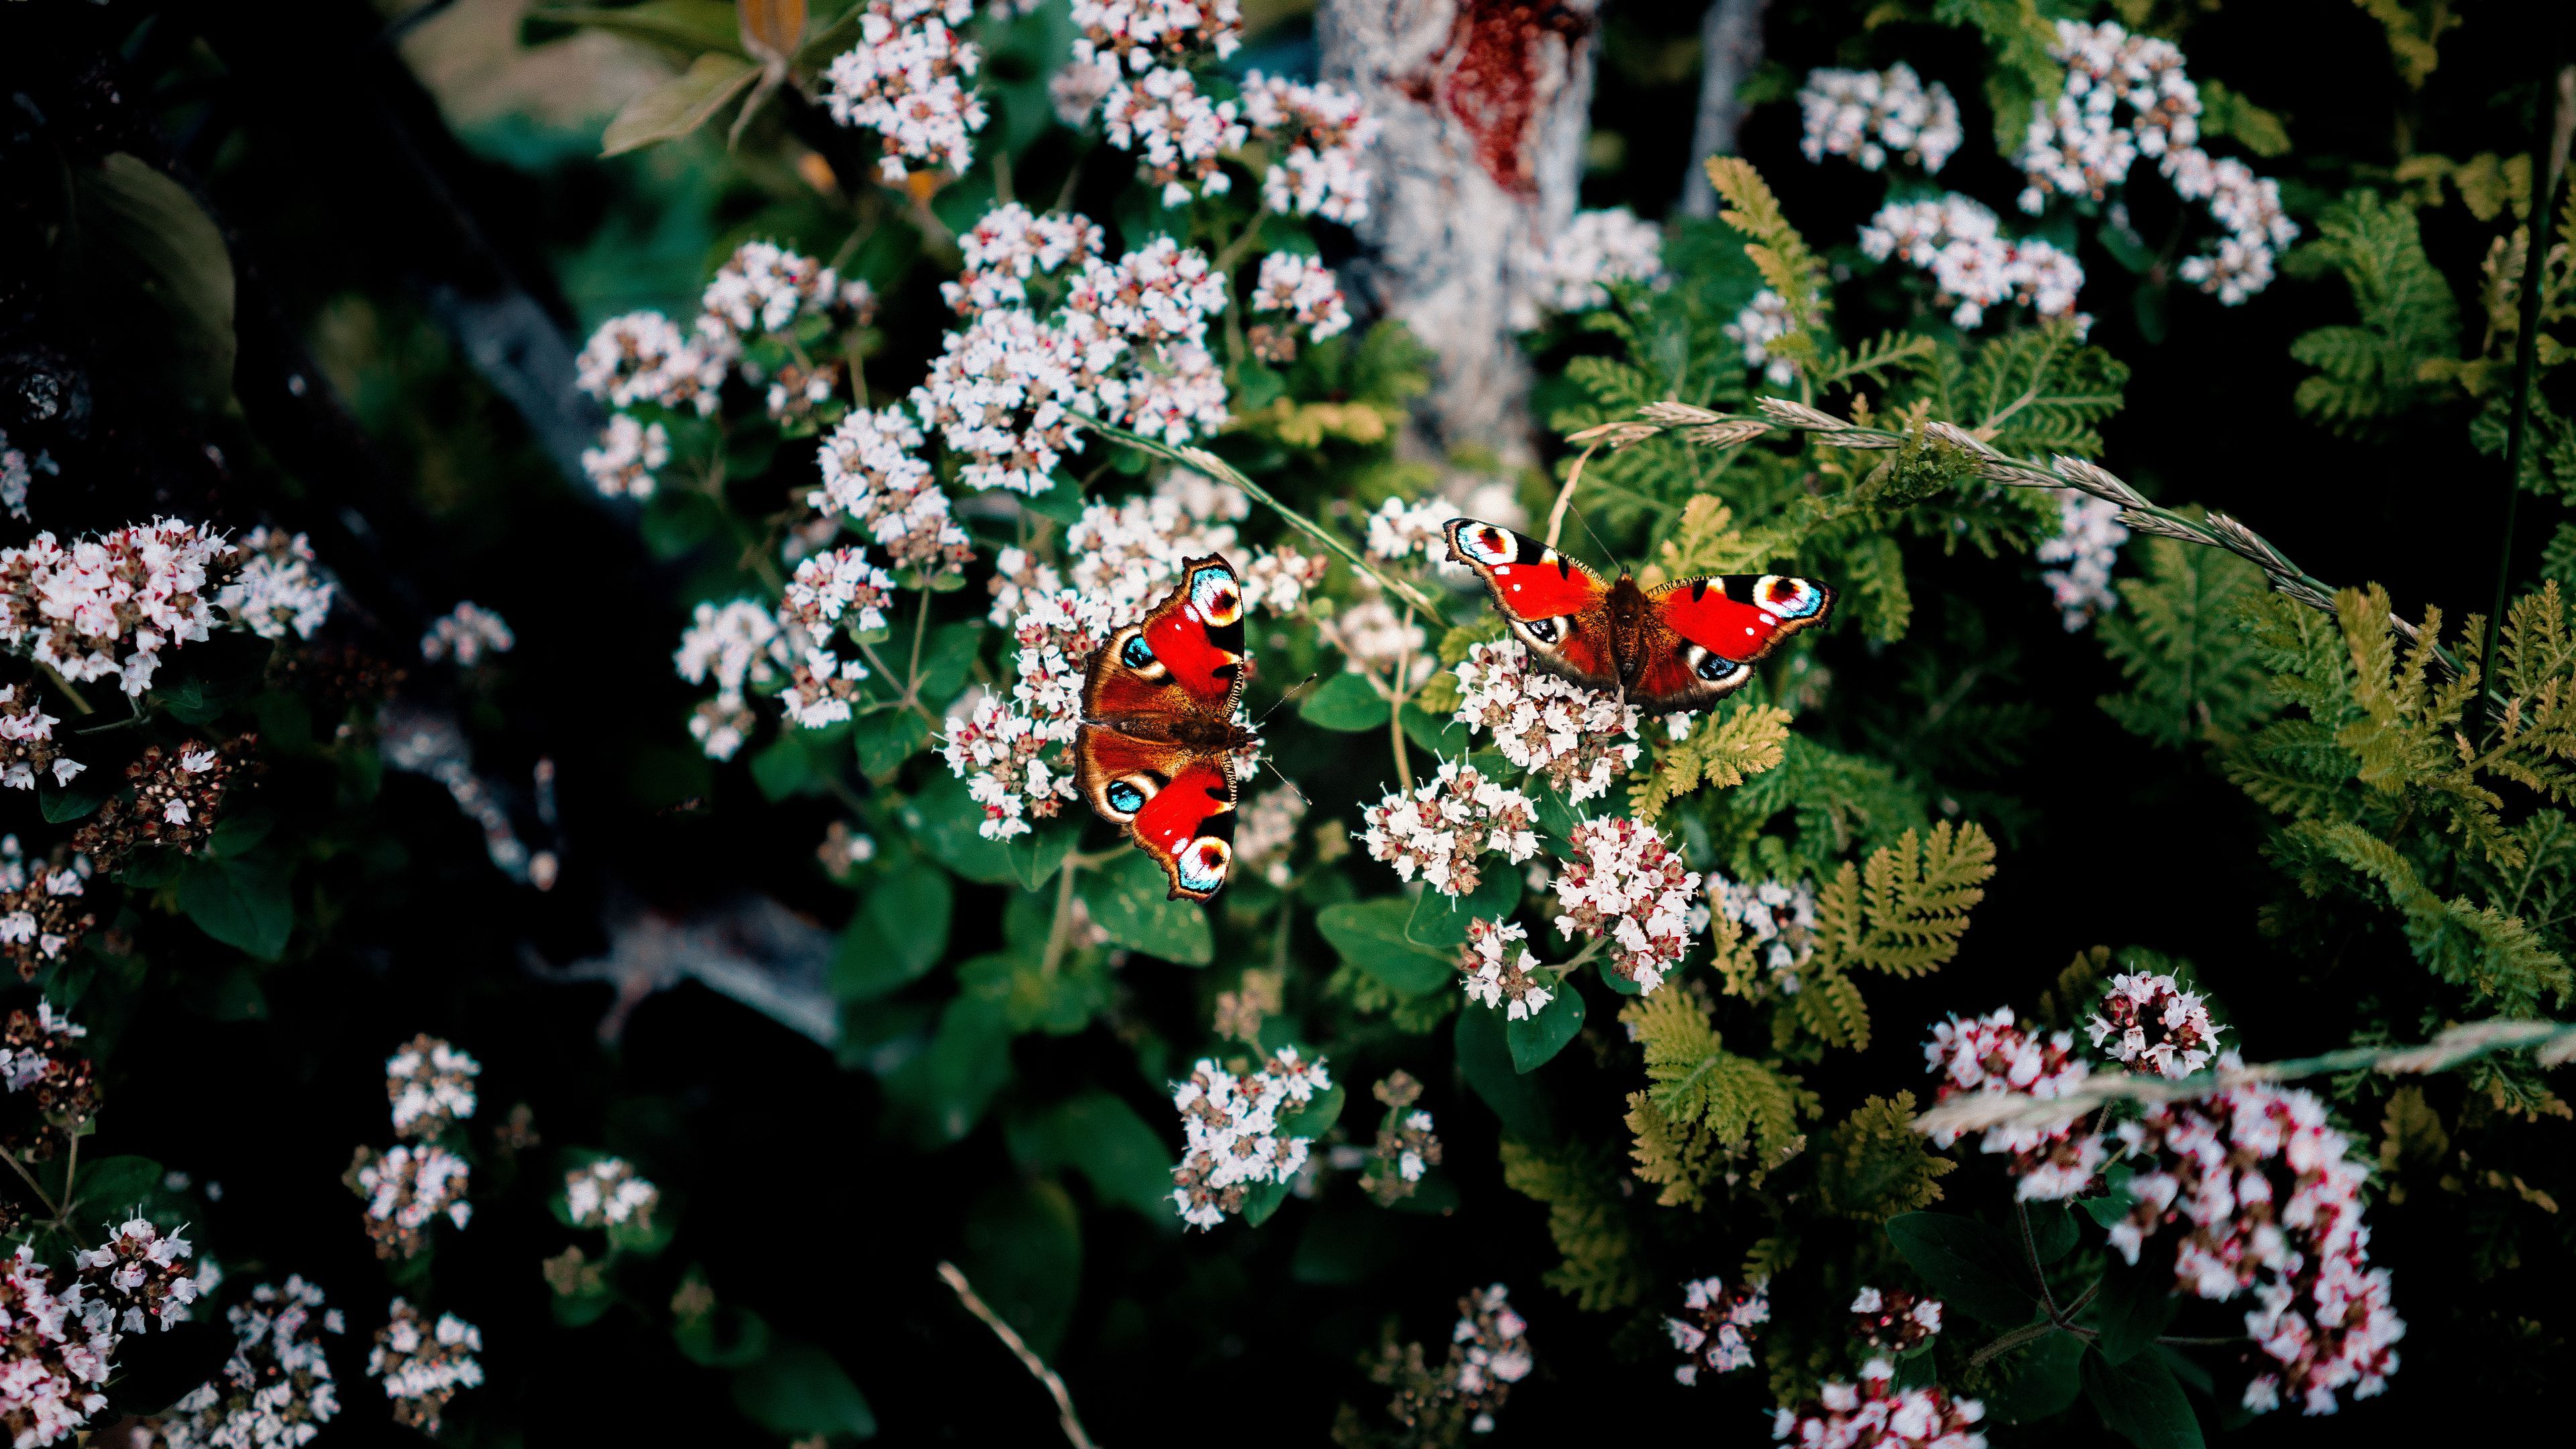 Download wallpaper 3840x2160 butterflies, flowers, patterns, summer, blur 4k uhd 16:9 HD background